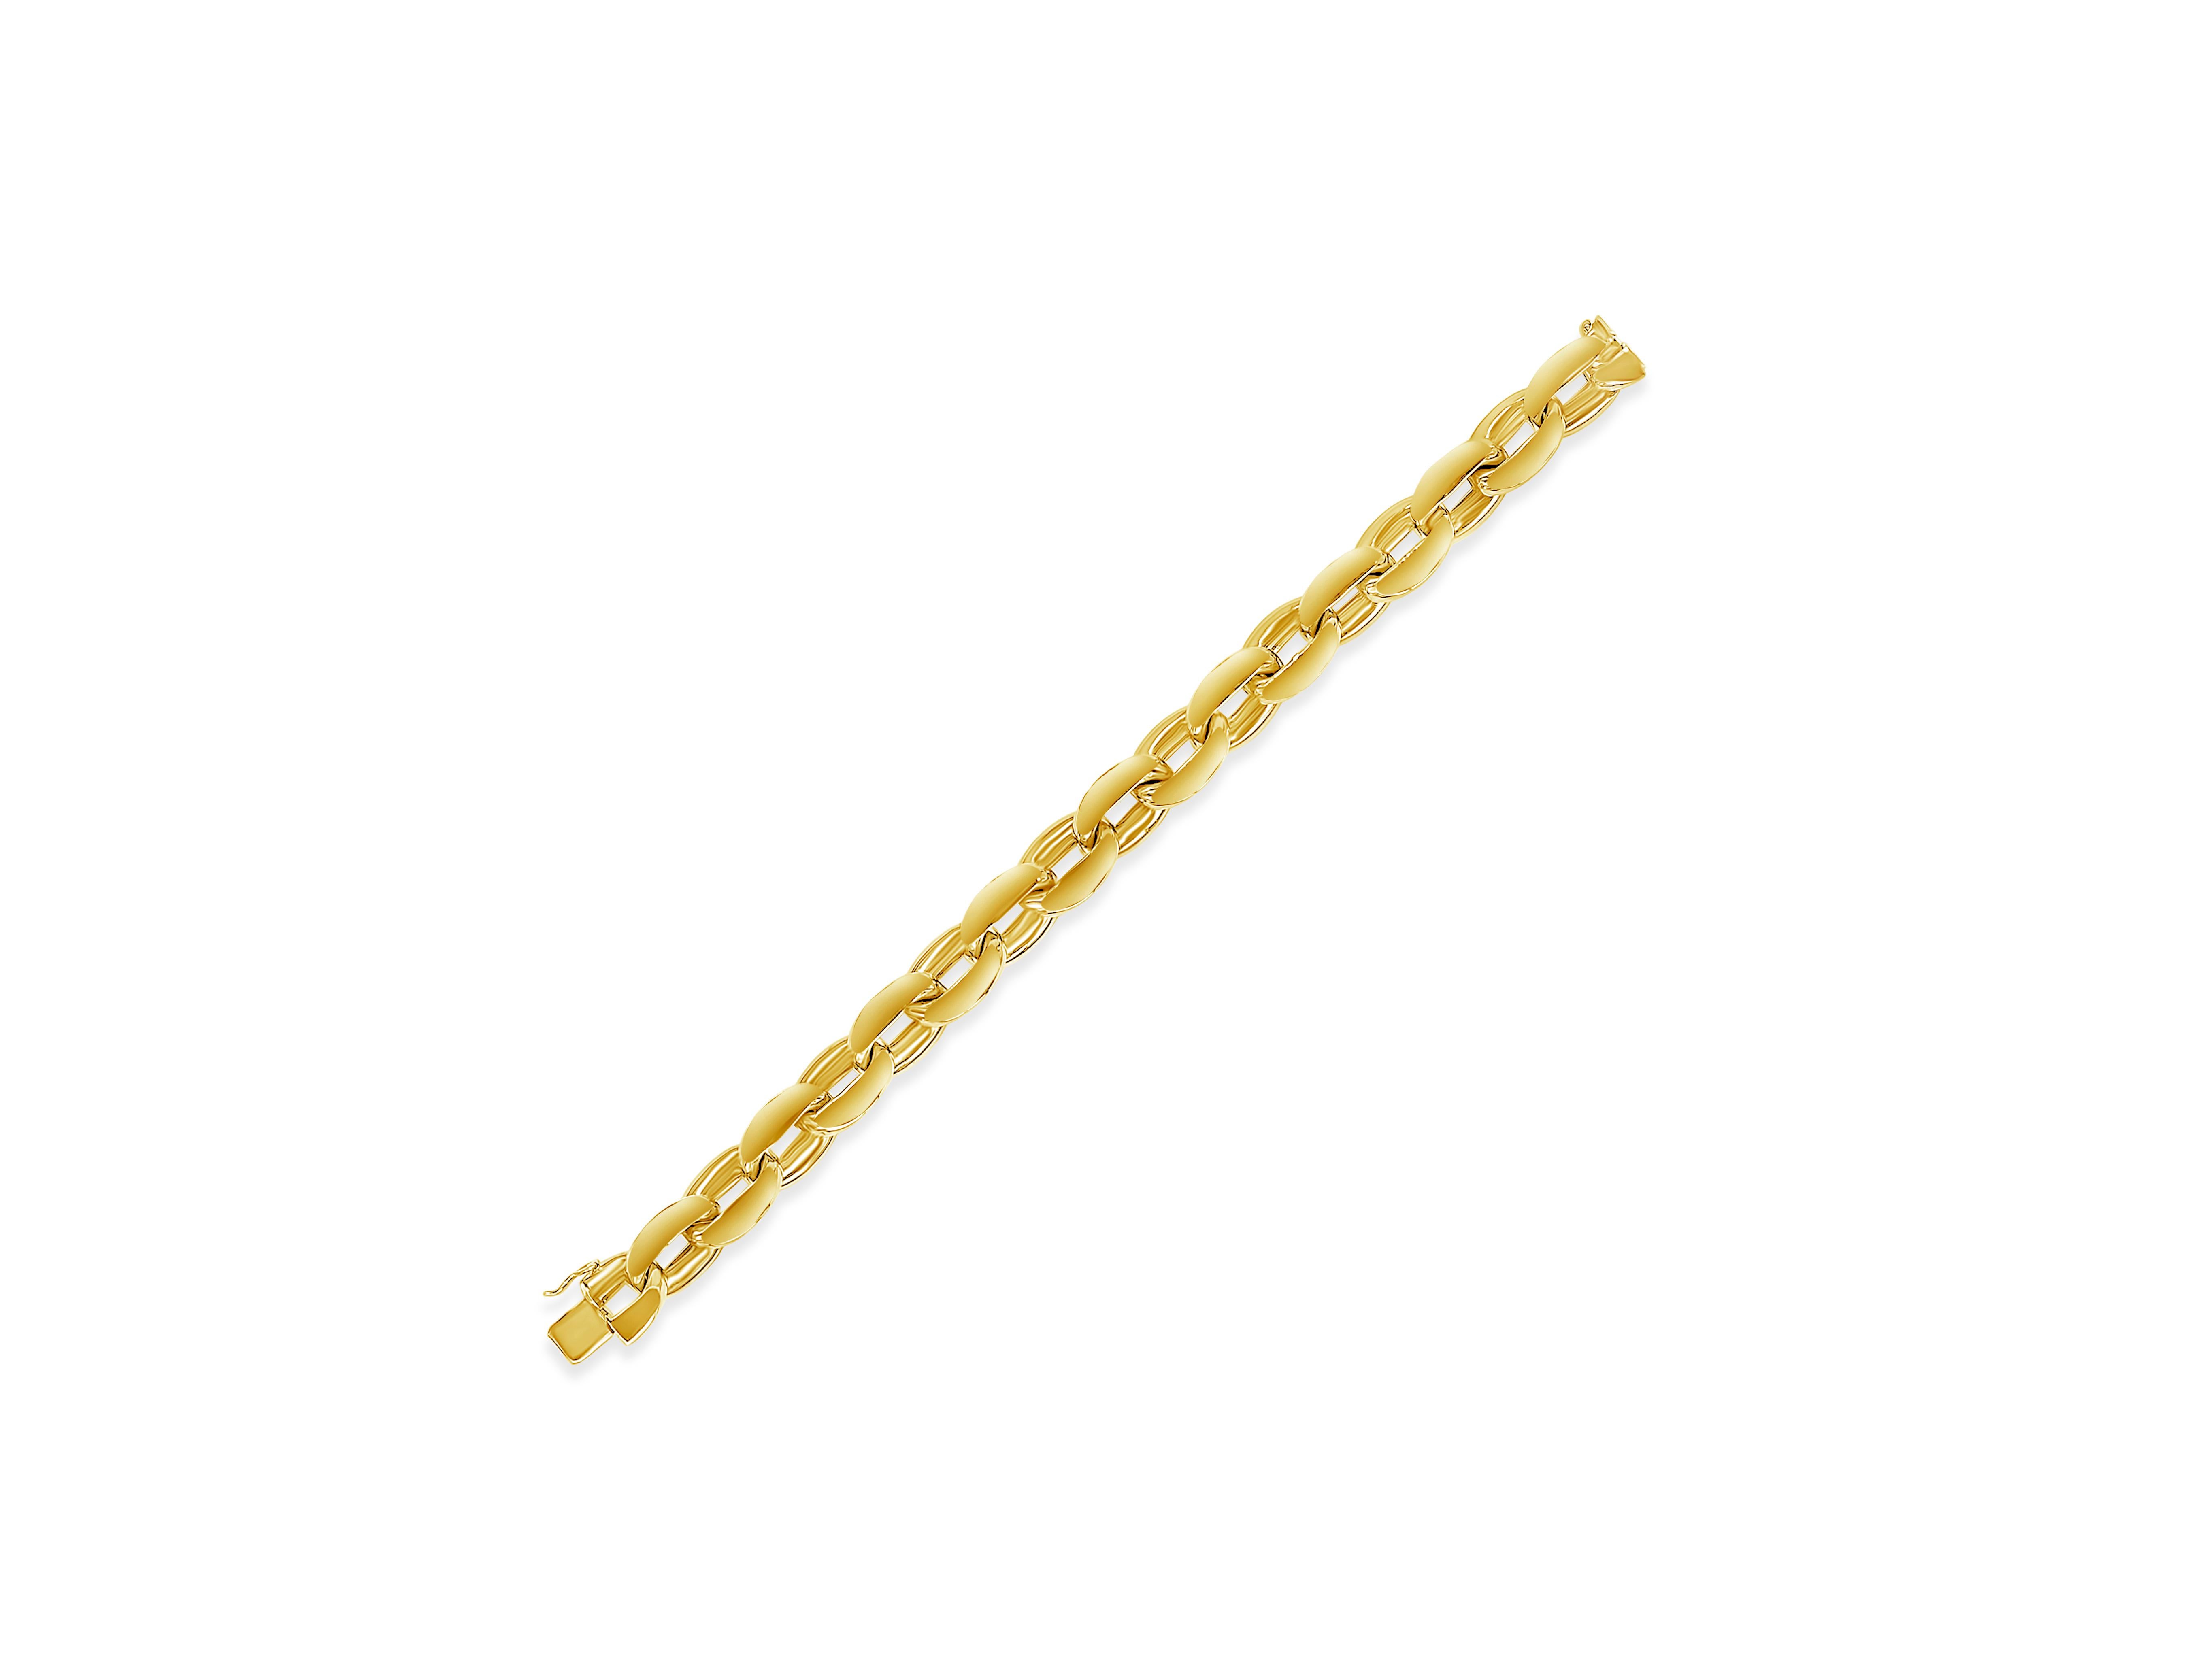 Un bracelet classique et distinctif présentant de larges maillons ovales en or jaune massif 18 carats. Le bracelet pèse 35.87 grammes. Longueur approximative de 8,5 pouces.